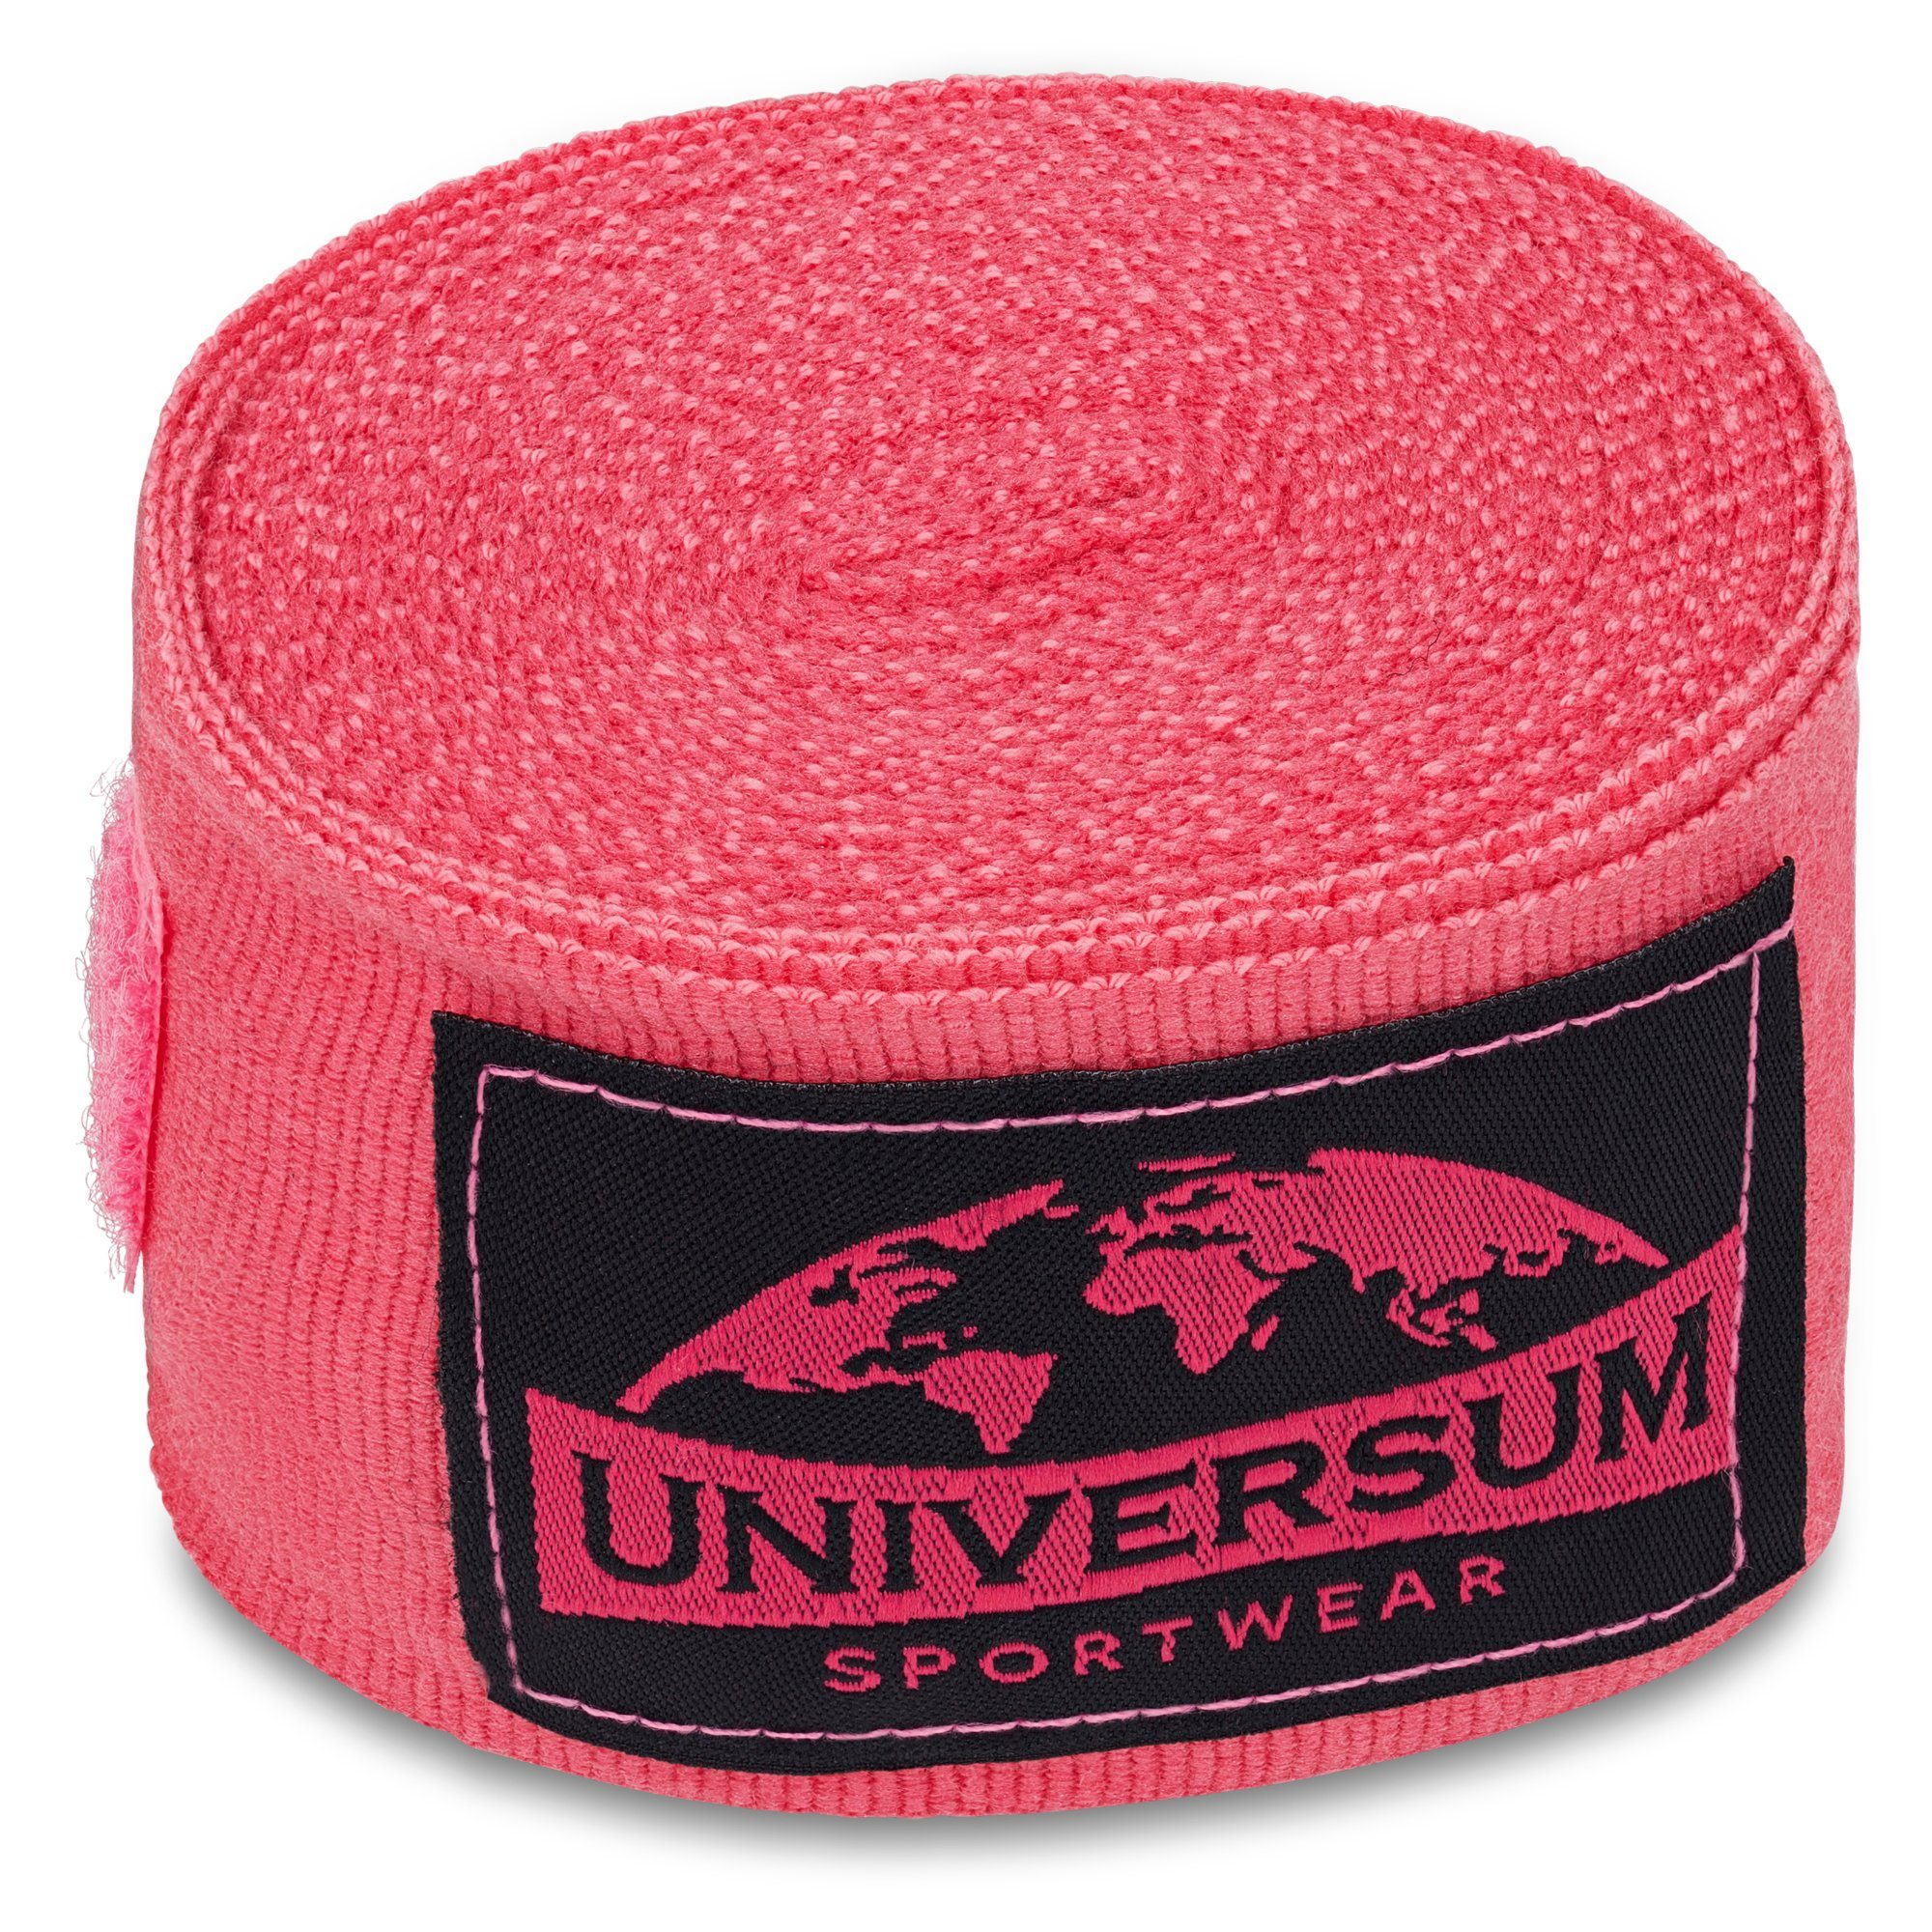 Handgelenk Universum Sportwear Rosa-Schwarz langen Boxbandagen Bandage, Klettverschluss mit